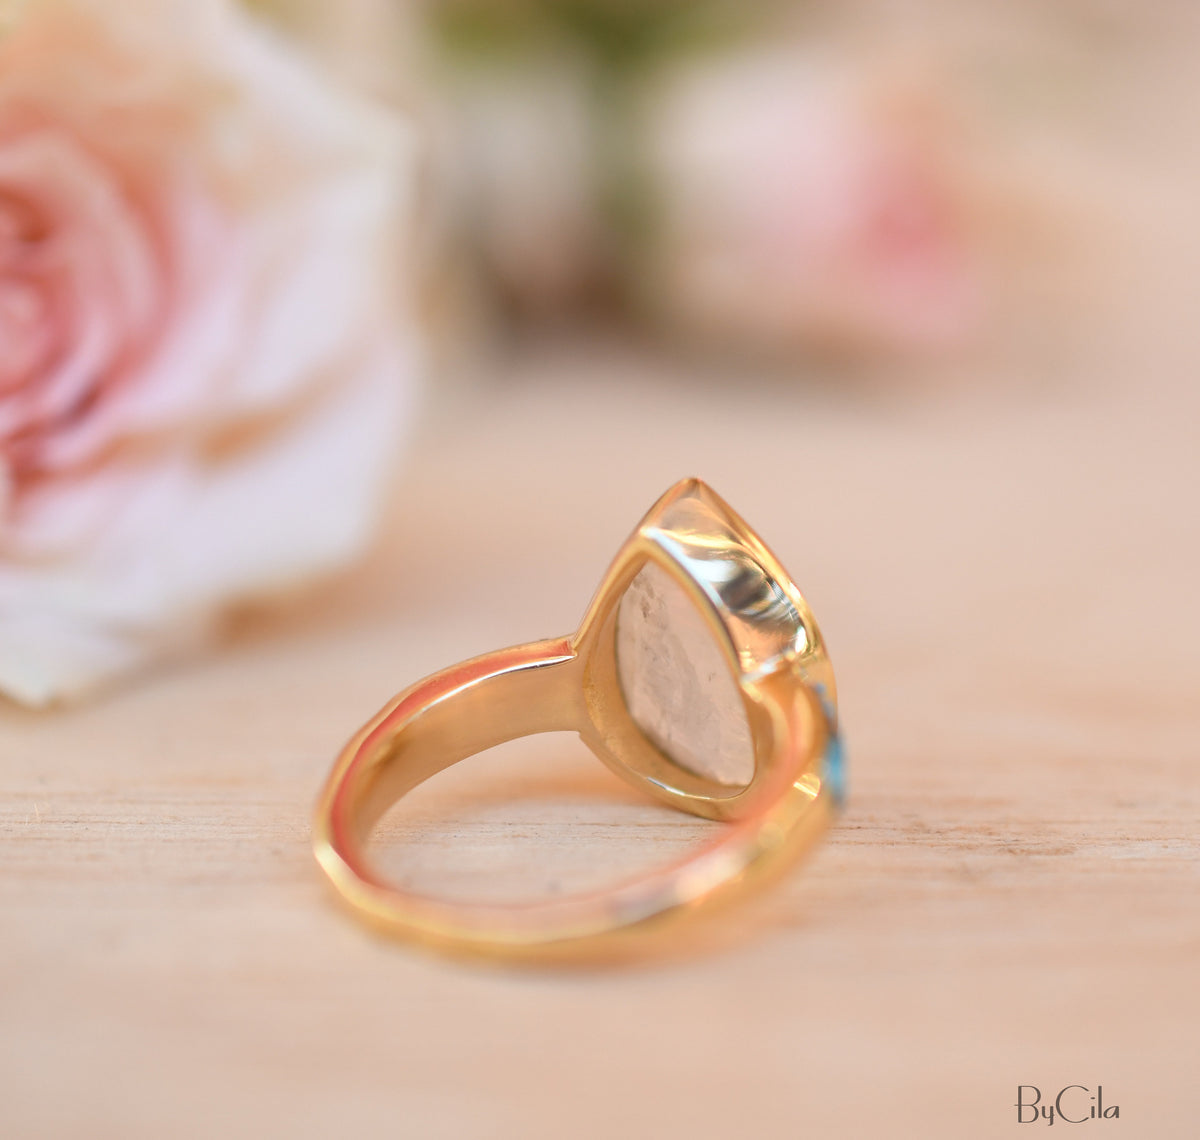 Moonstone & Mosaic Turquoise Ring*18k Gold Plated Ring*Statement Ring*Gemstone Ring *Labradorite *Bridal Ring *Organic Ring *Natural *BJR178